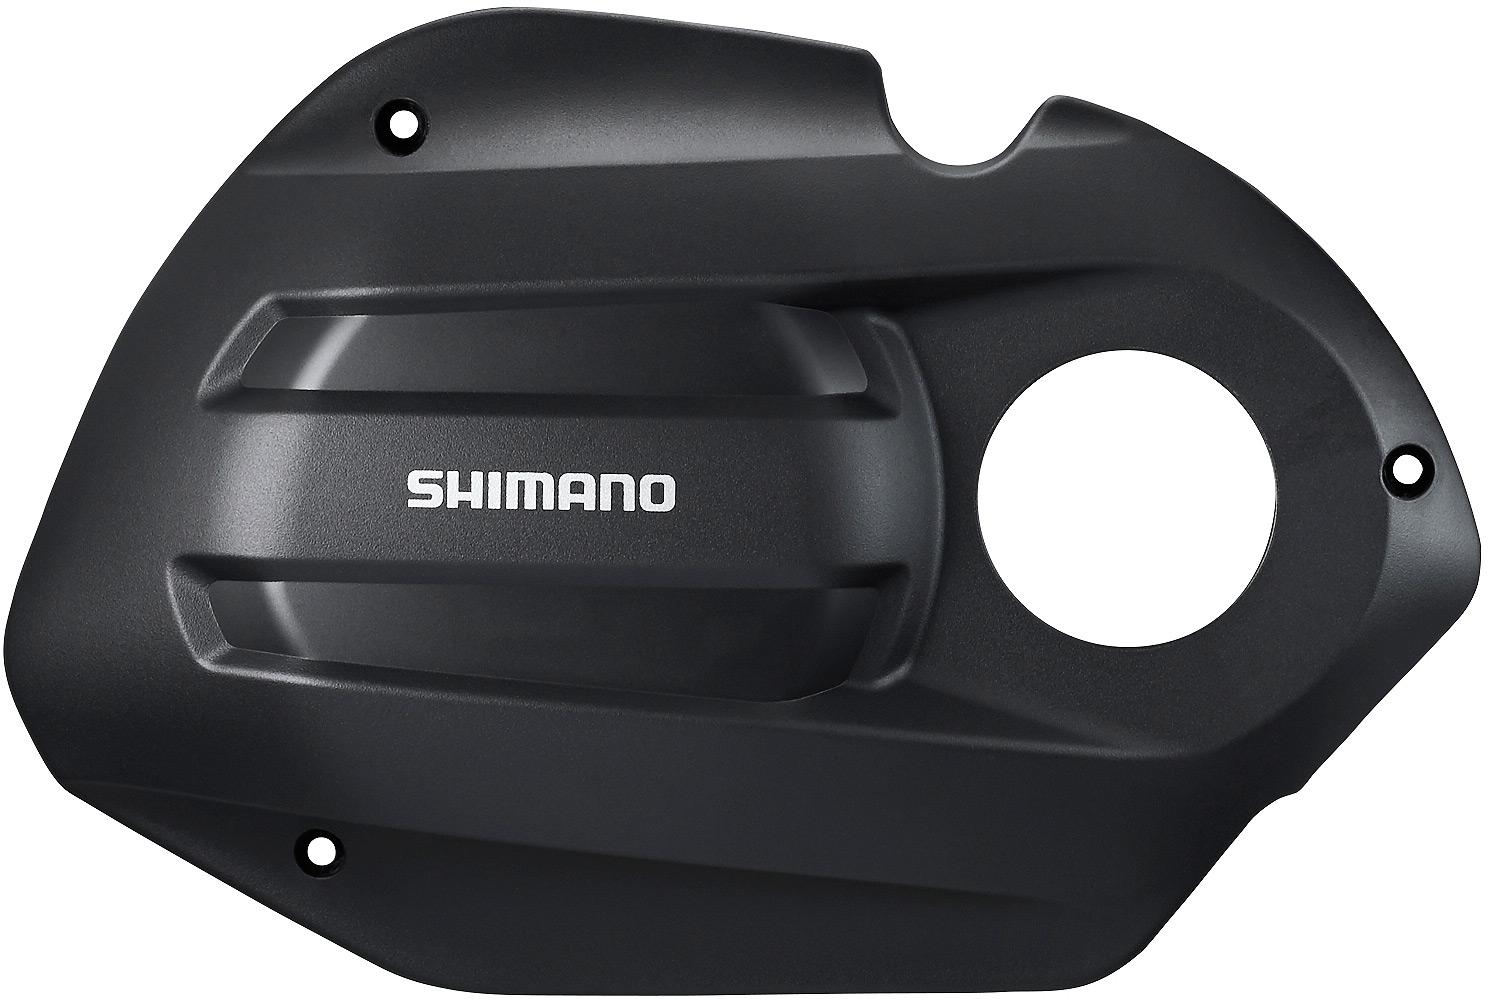 Shimano Steps Smdue50 Drive Unit Cover - Black